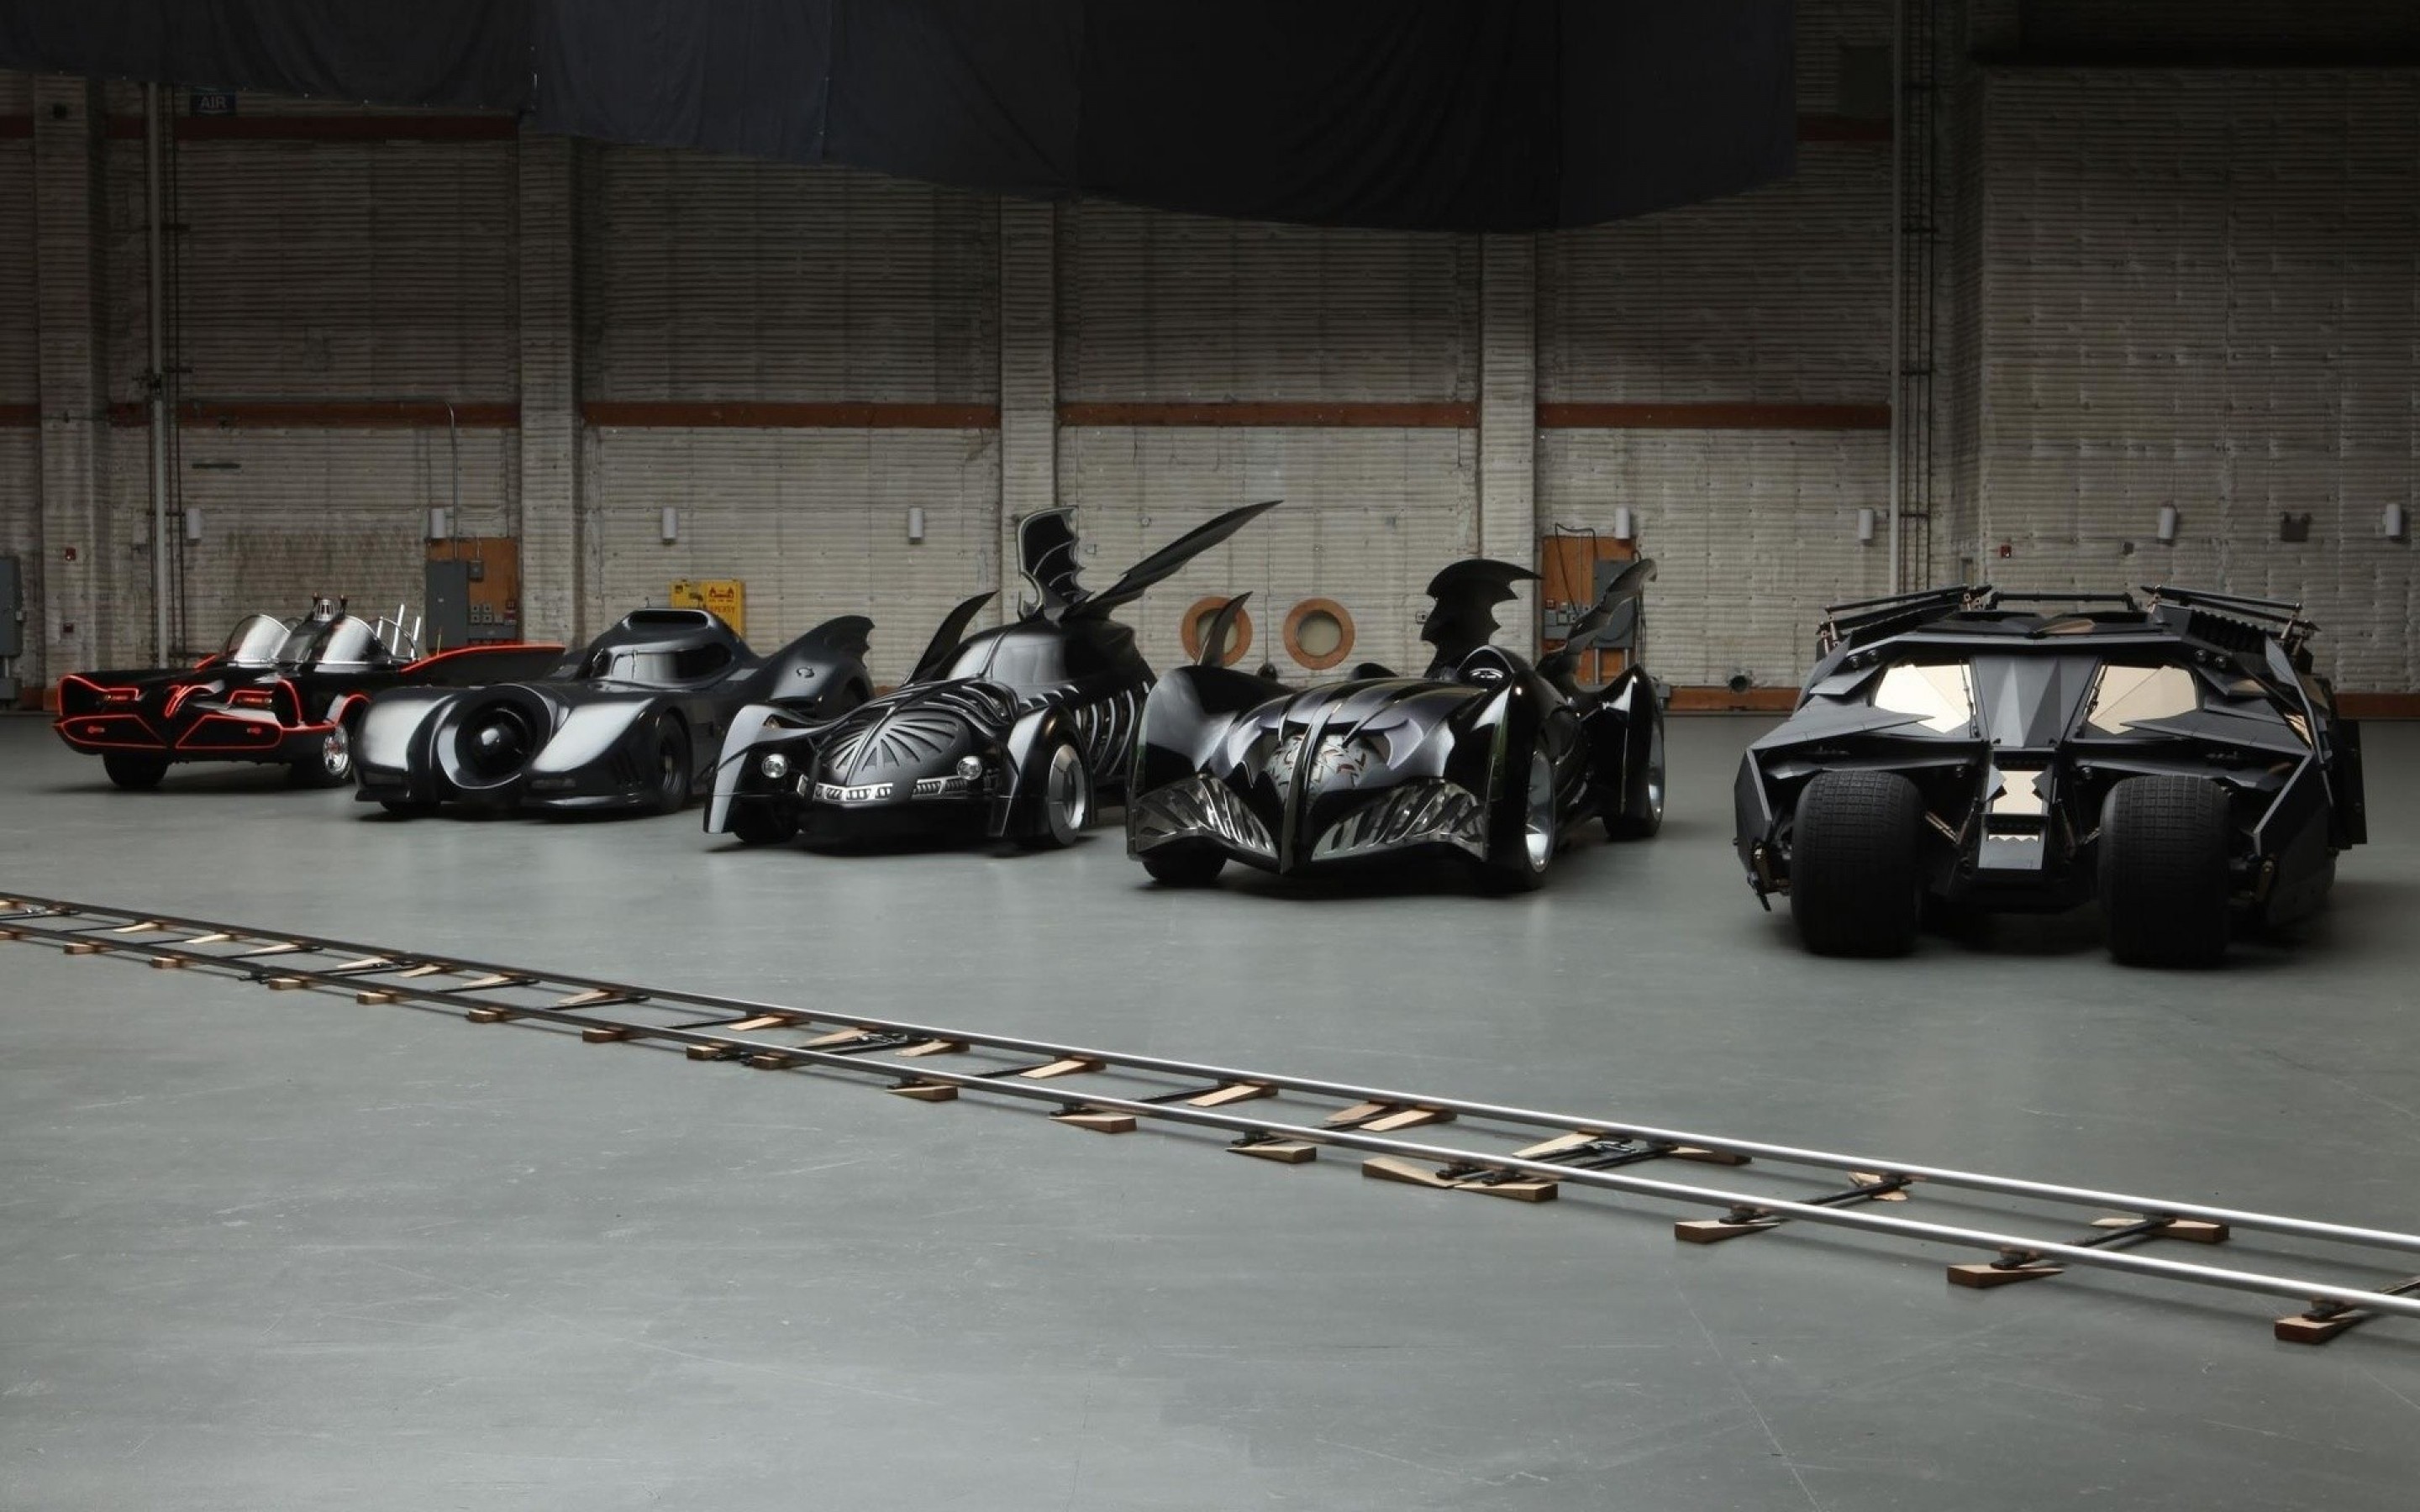 Реалистичная автомобильная реплика Бэтмобиля из фильма “Бэтмен: начало”